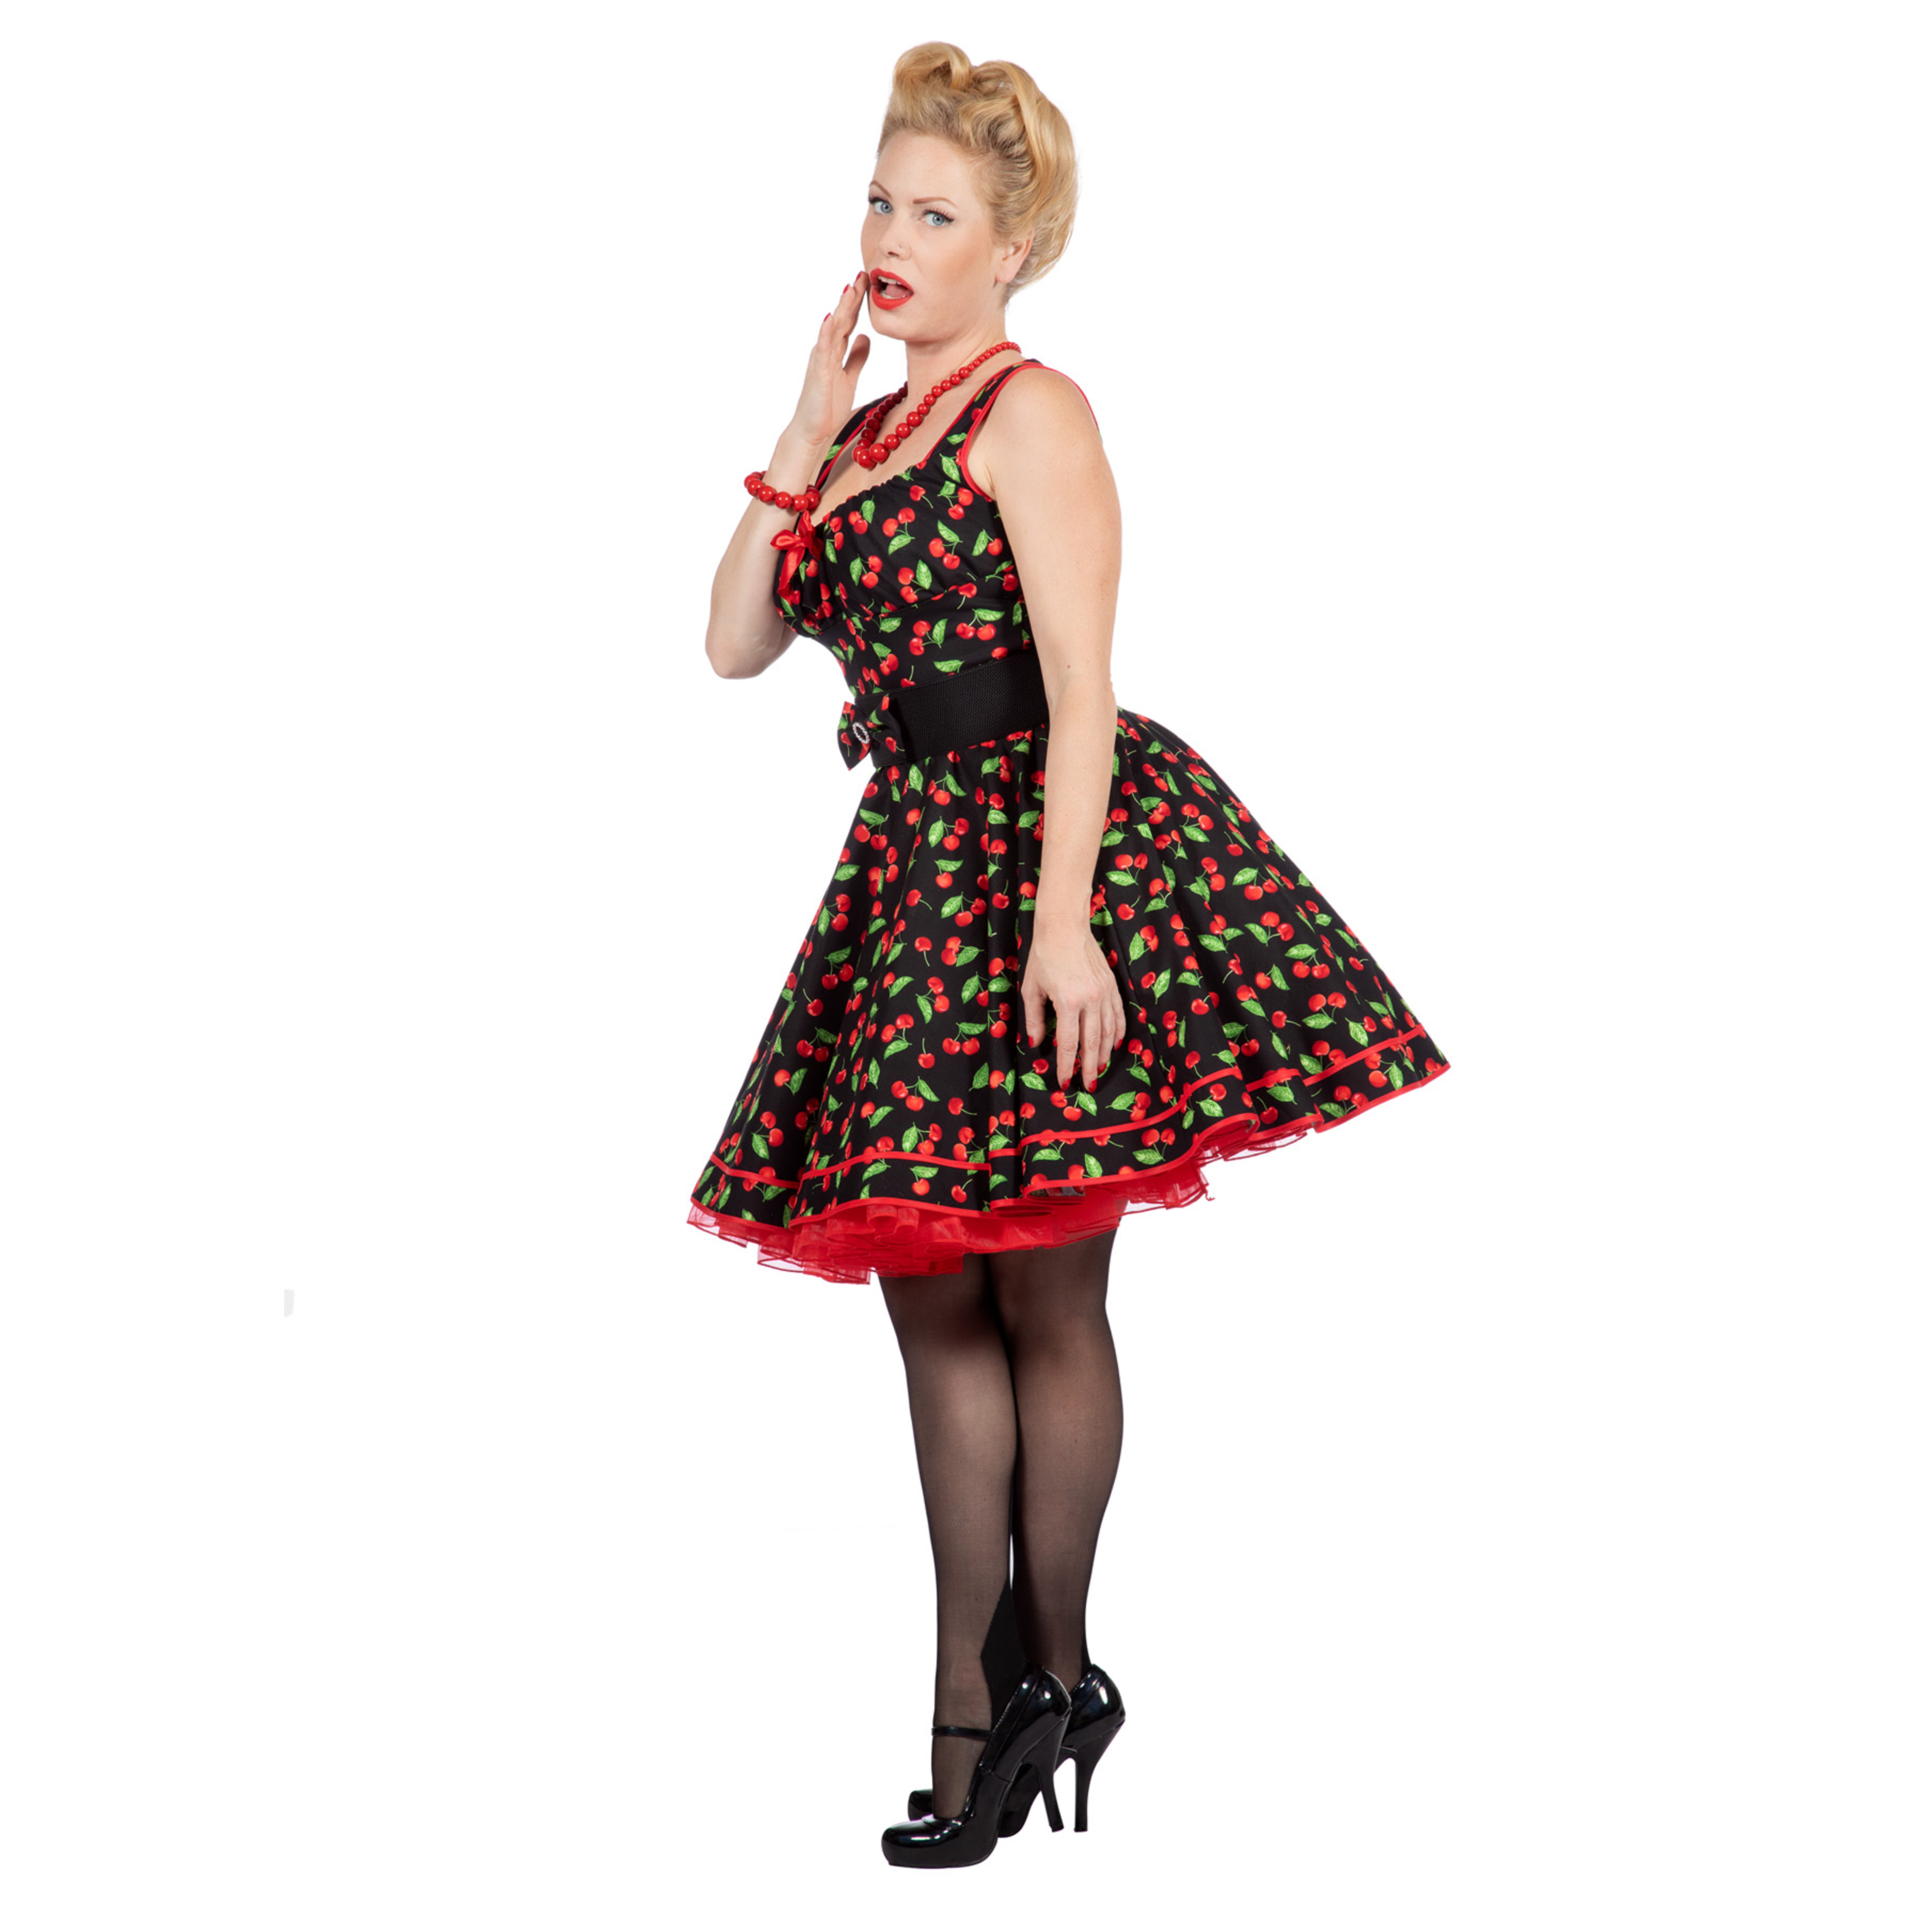 Premium-Line Damen-Kleid Rockabilly Cherry, Gr. 42 Bild 2